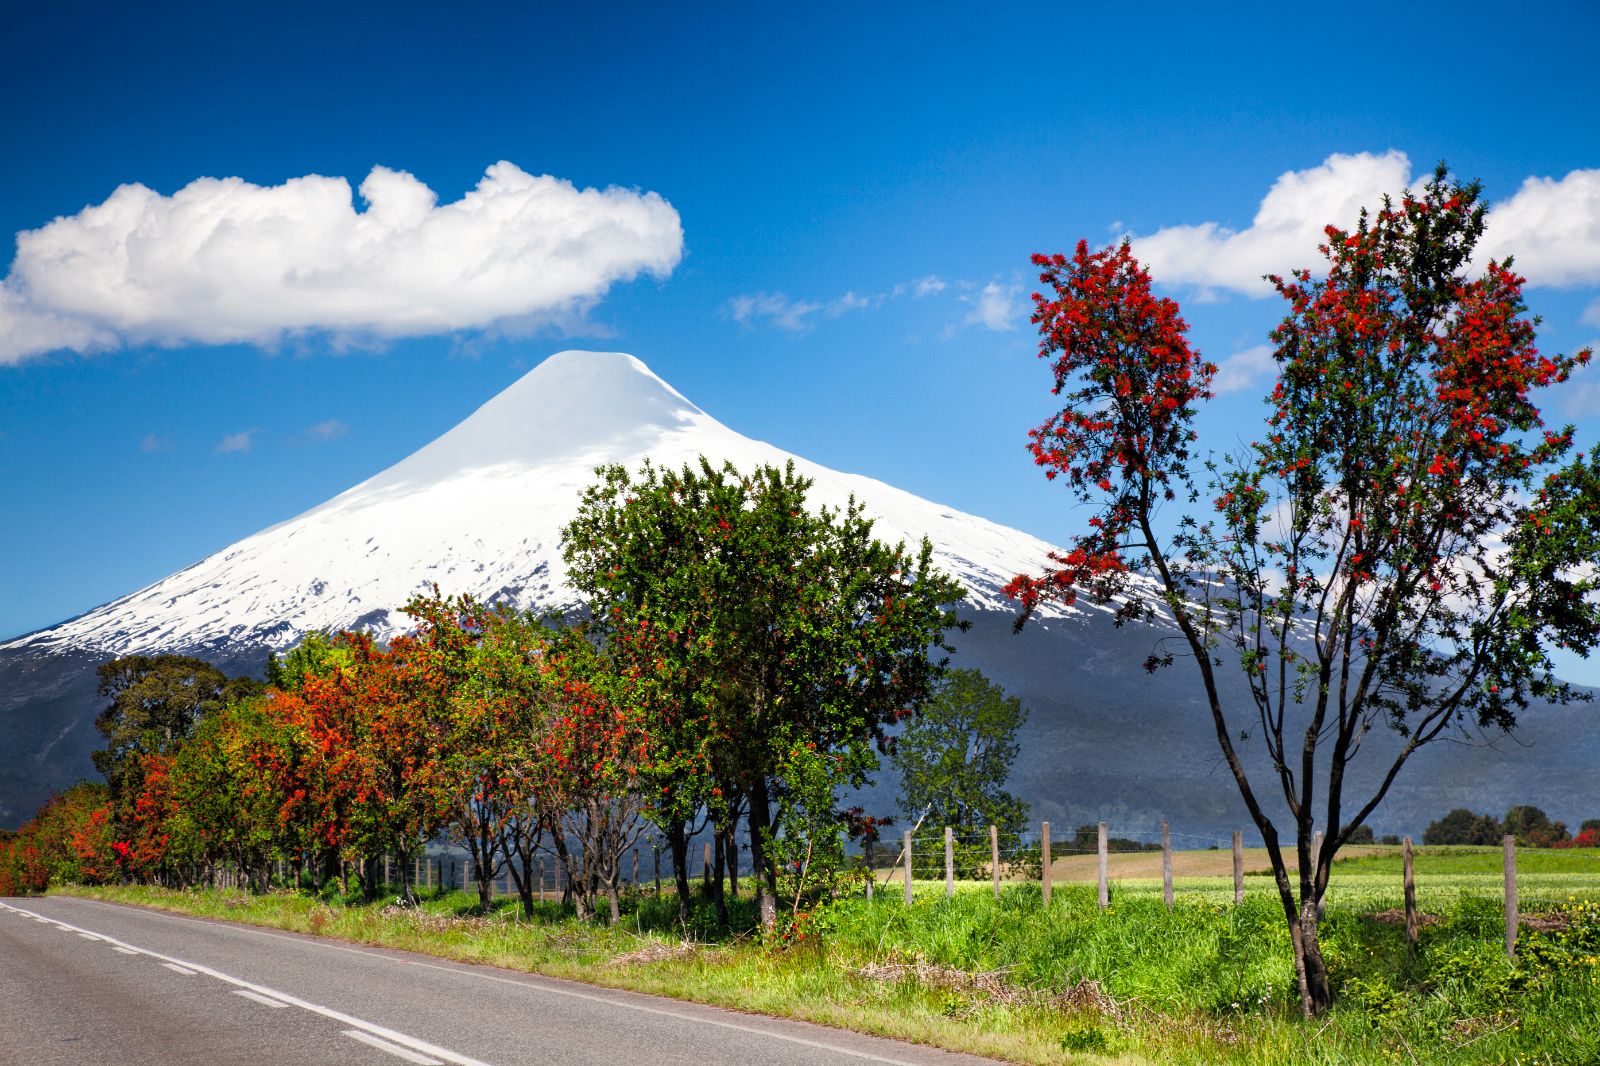 The snowcapped peak of the Osorno Volcano near Pucon in Chile